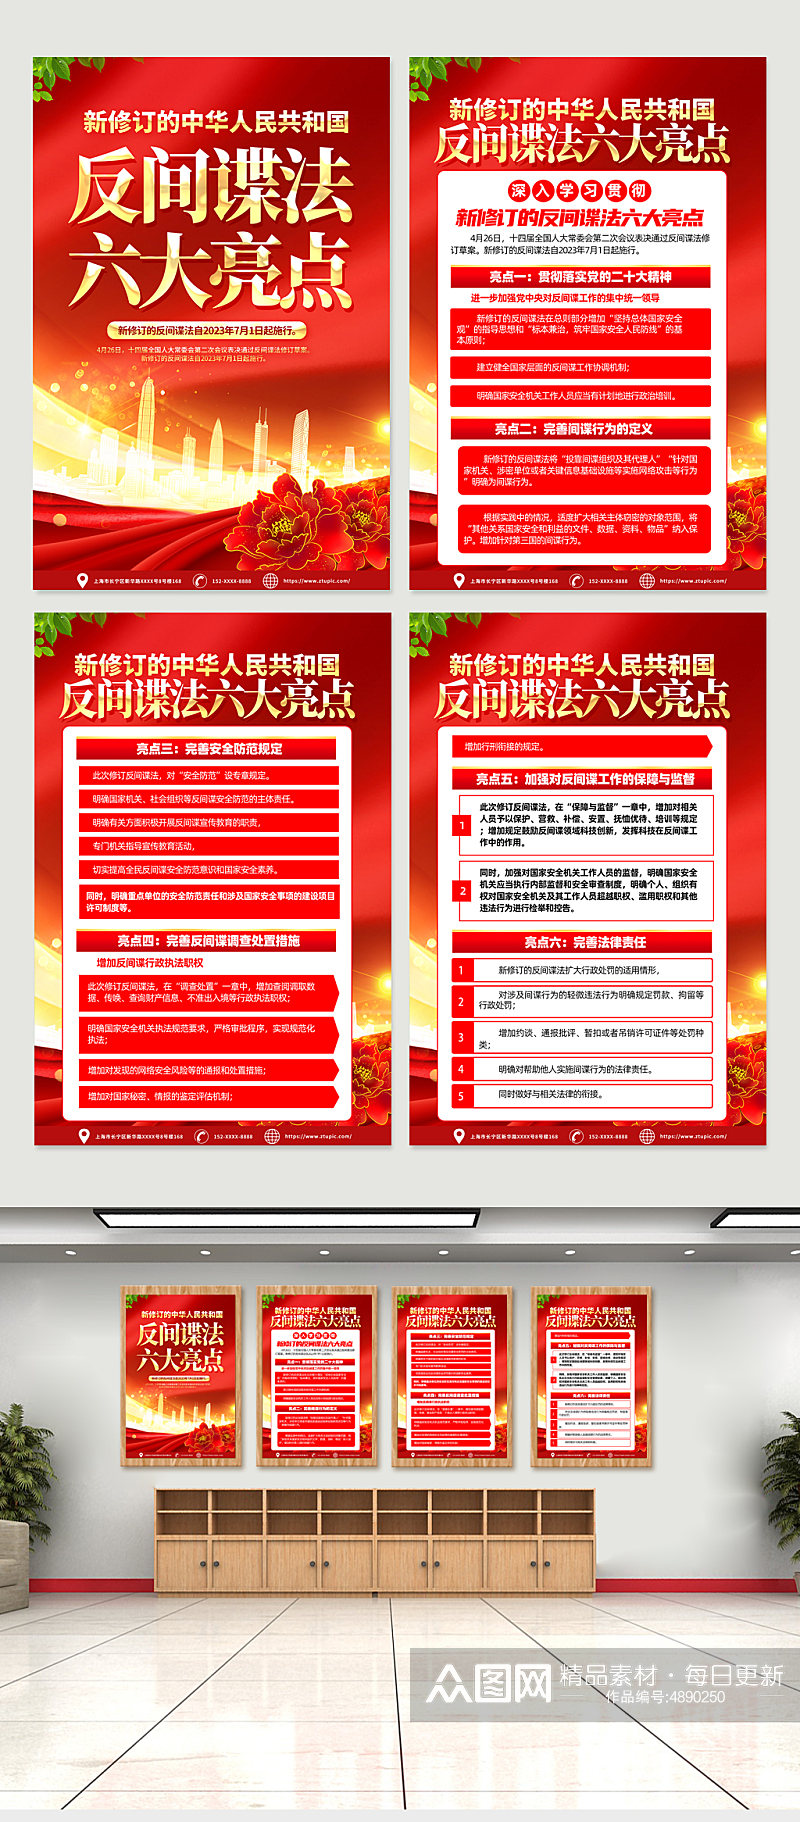 高端新修订的中华人民共和国 反间谍法 海报素材